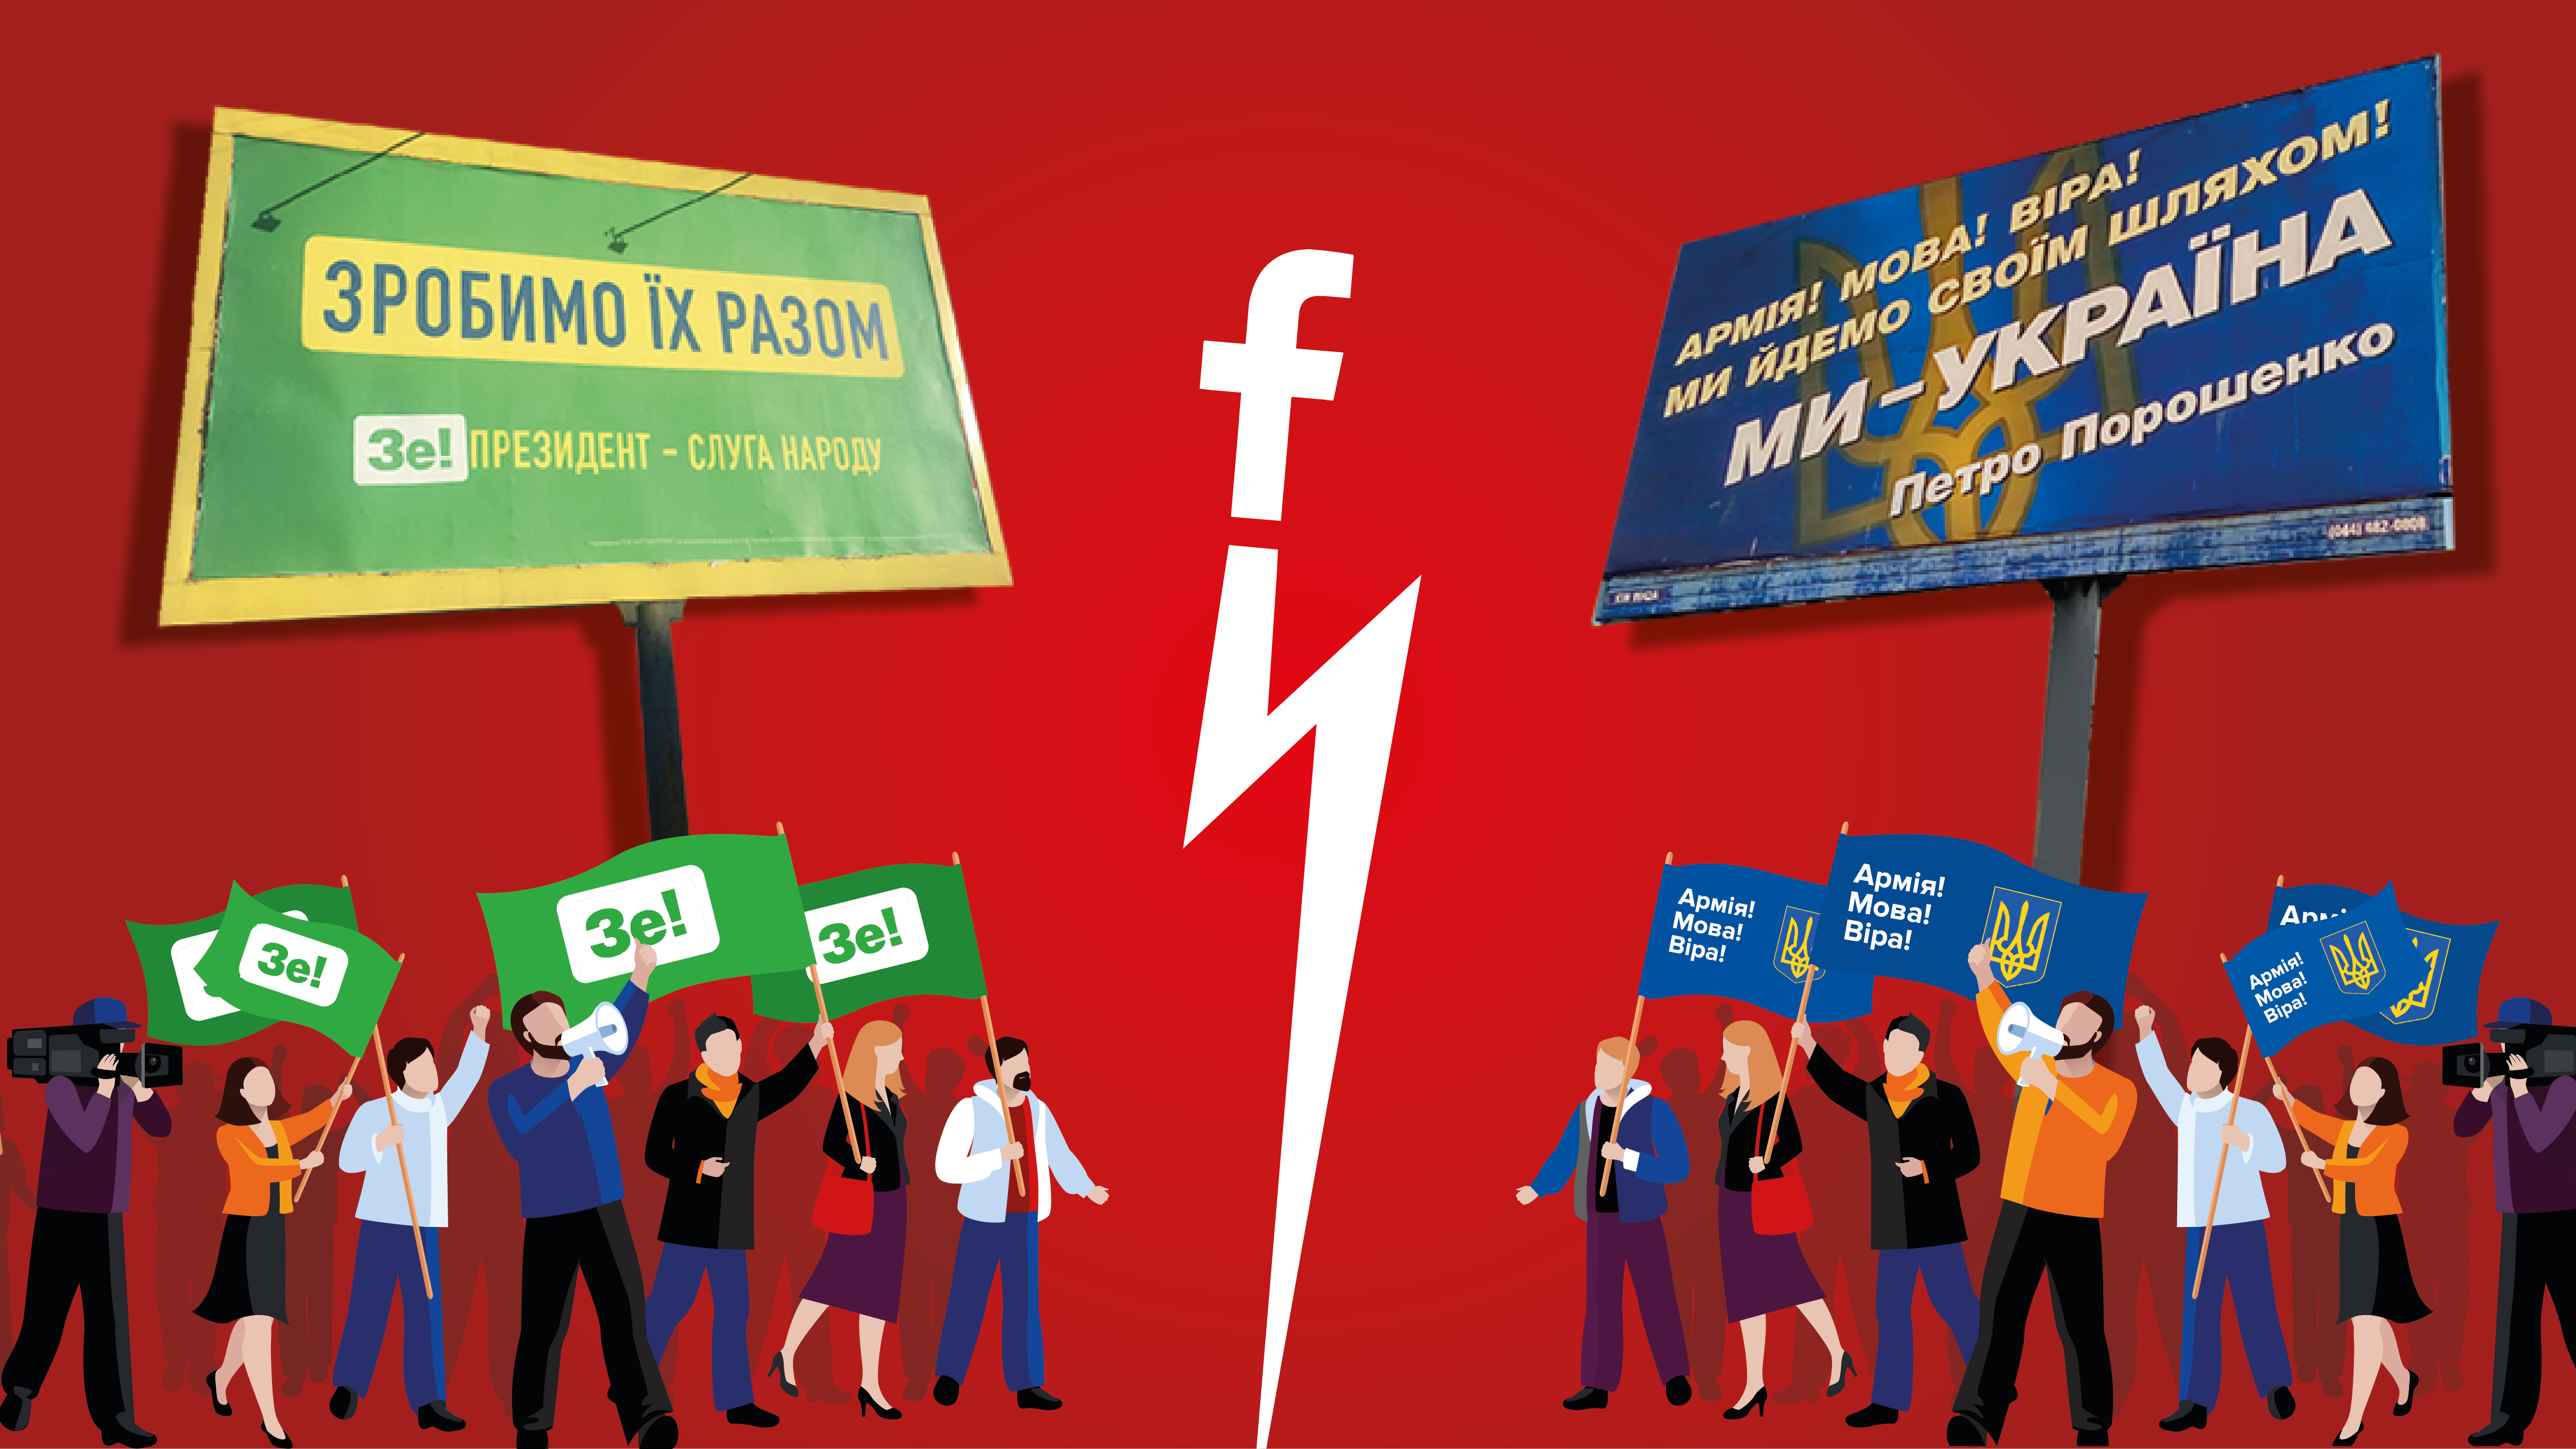 "Барыга" и "Бенин клоун": какие из тезисов в Facebook являются фейками